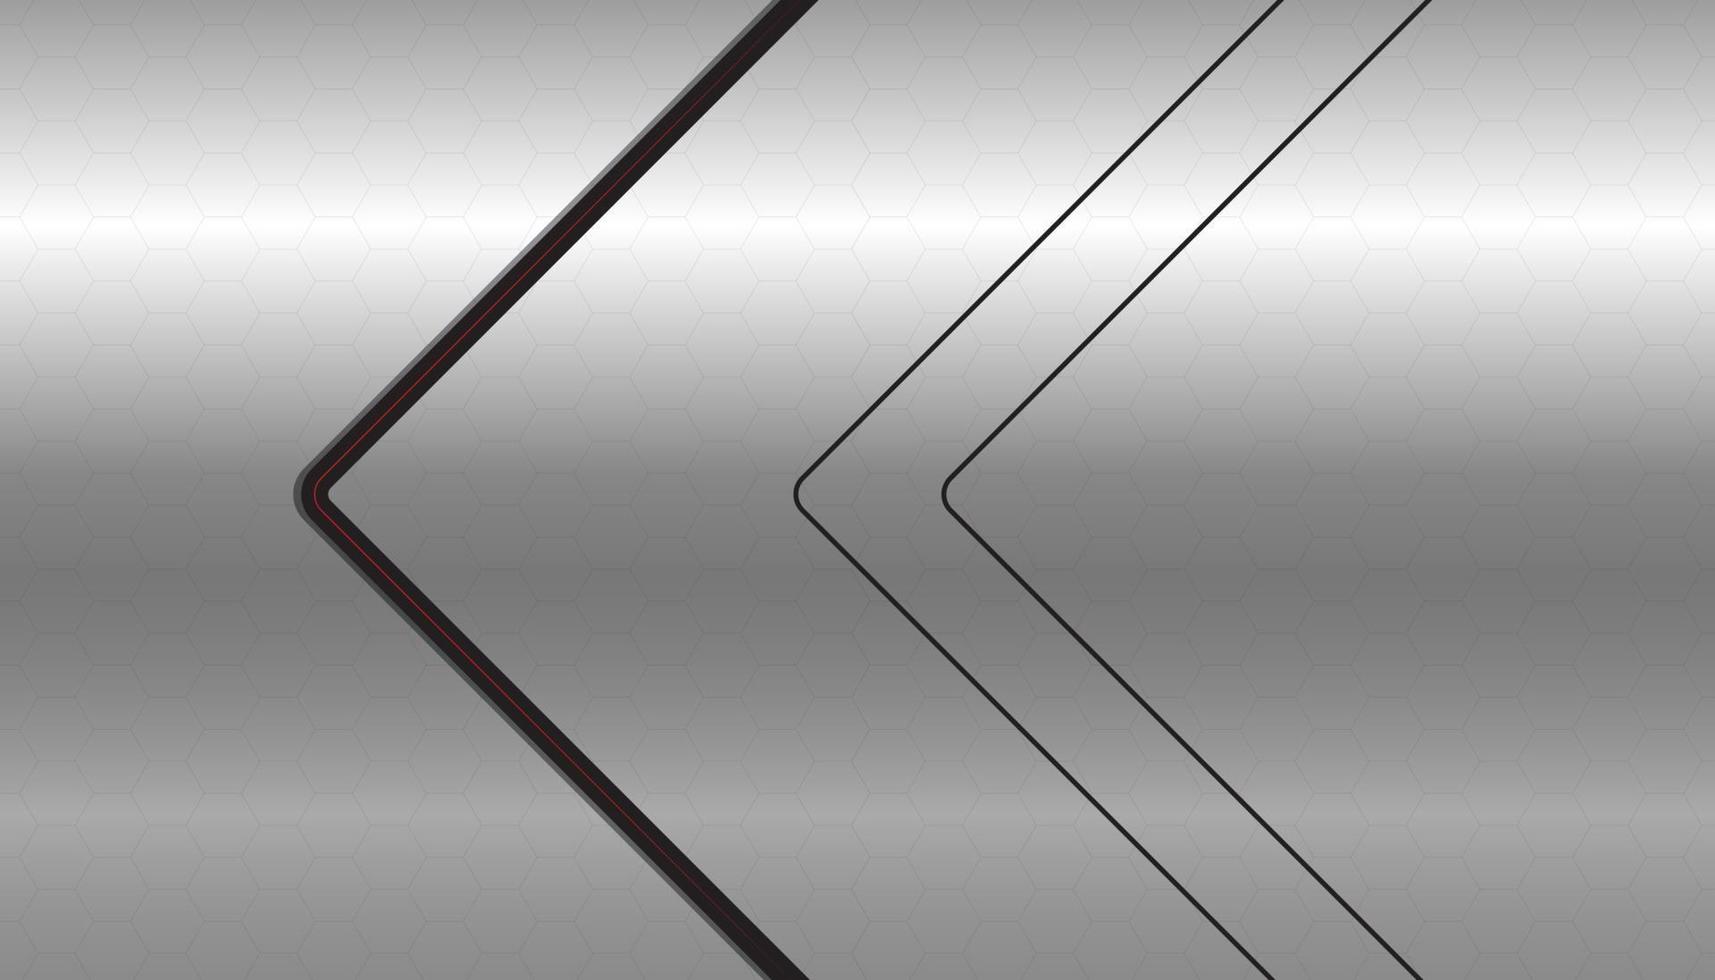 moderner luxus abstrakter hintergrund mit leuchtenden schwarzen linienelementen. schöne geometrische formen auf einem eleganten silbernen farbverlaufshintergrund. Vektor